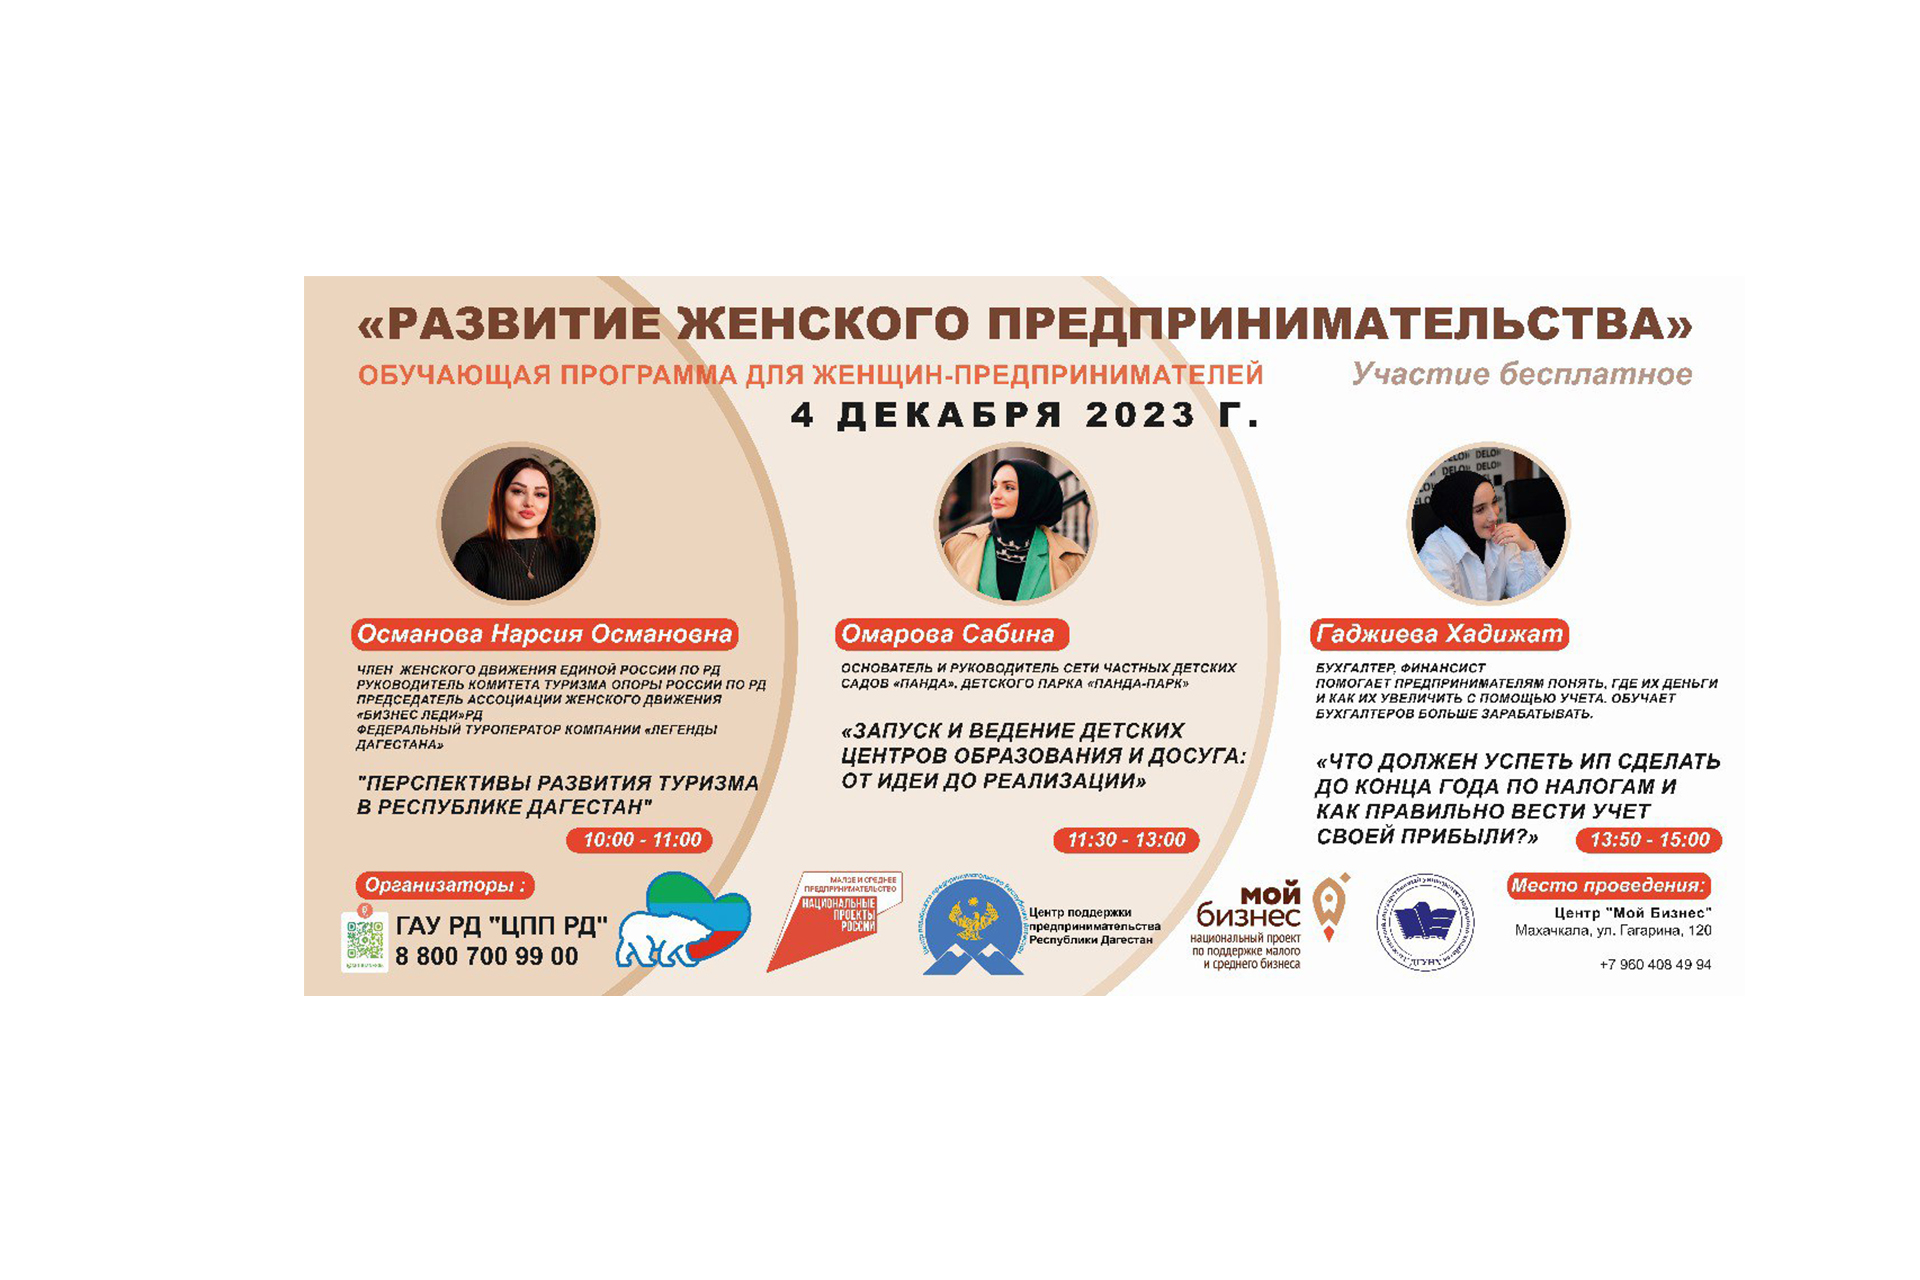 Обучающая программа-тренинг «Развитие женского предпринимательства», организованная Женским движением Единой России.